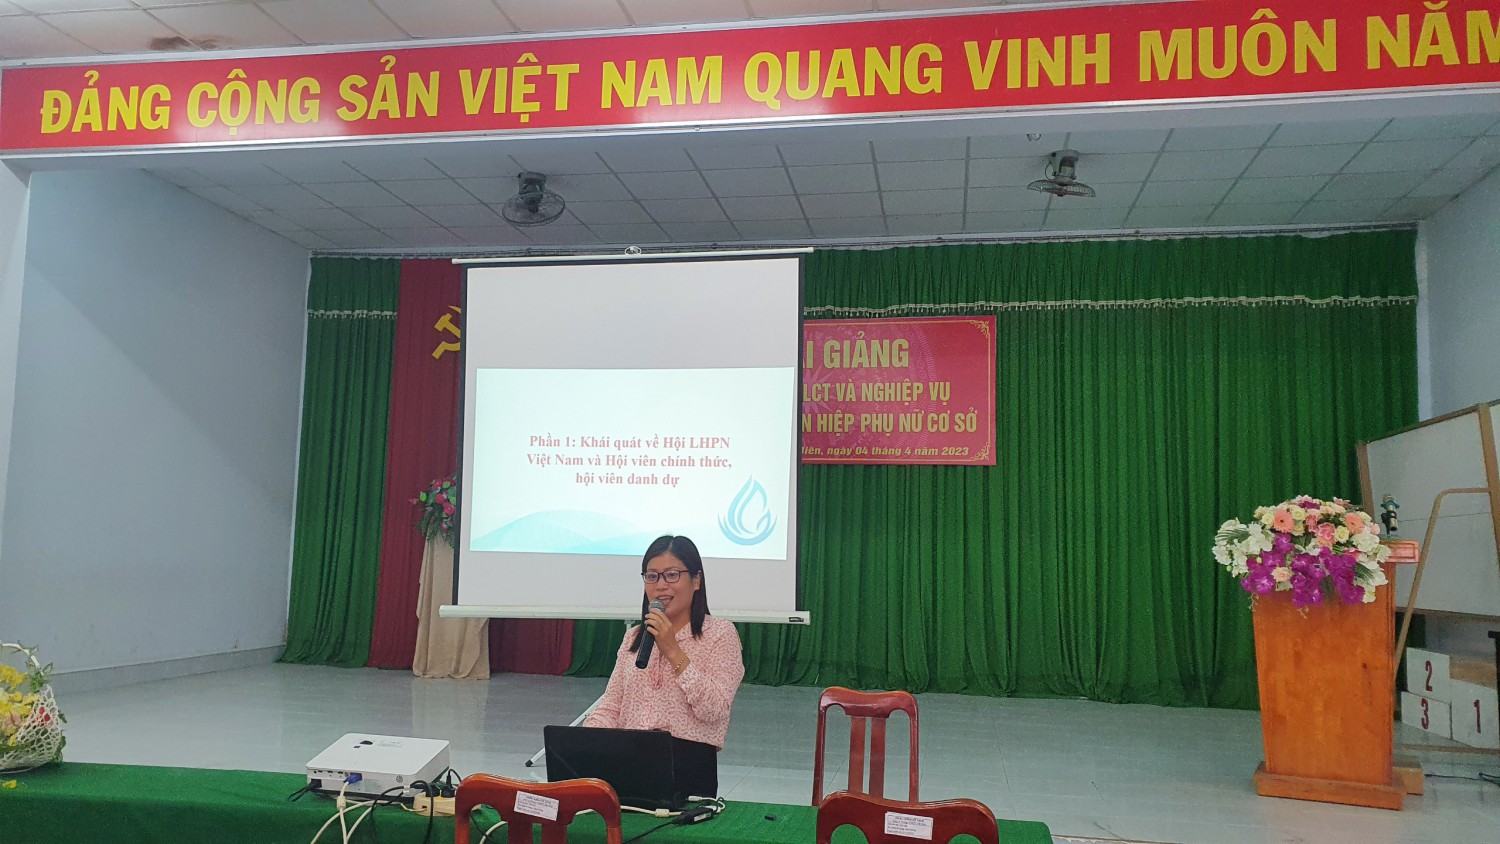 Tân Biên: Bồi dưỡng LLCT và nghiệp vụ cho cán bộ Hội LHPN cơ sở.